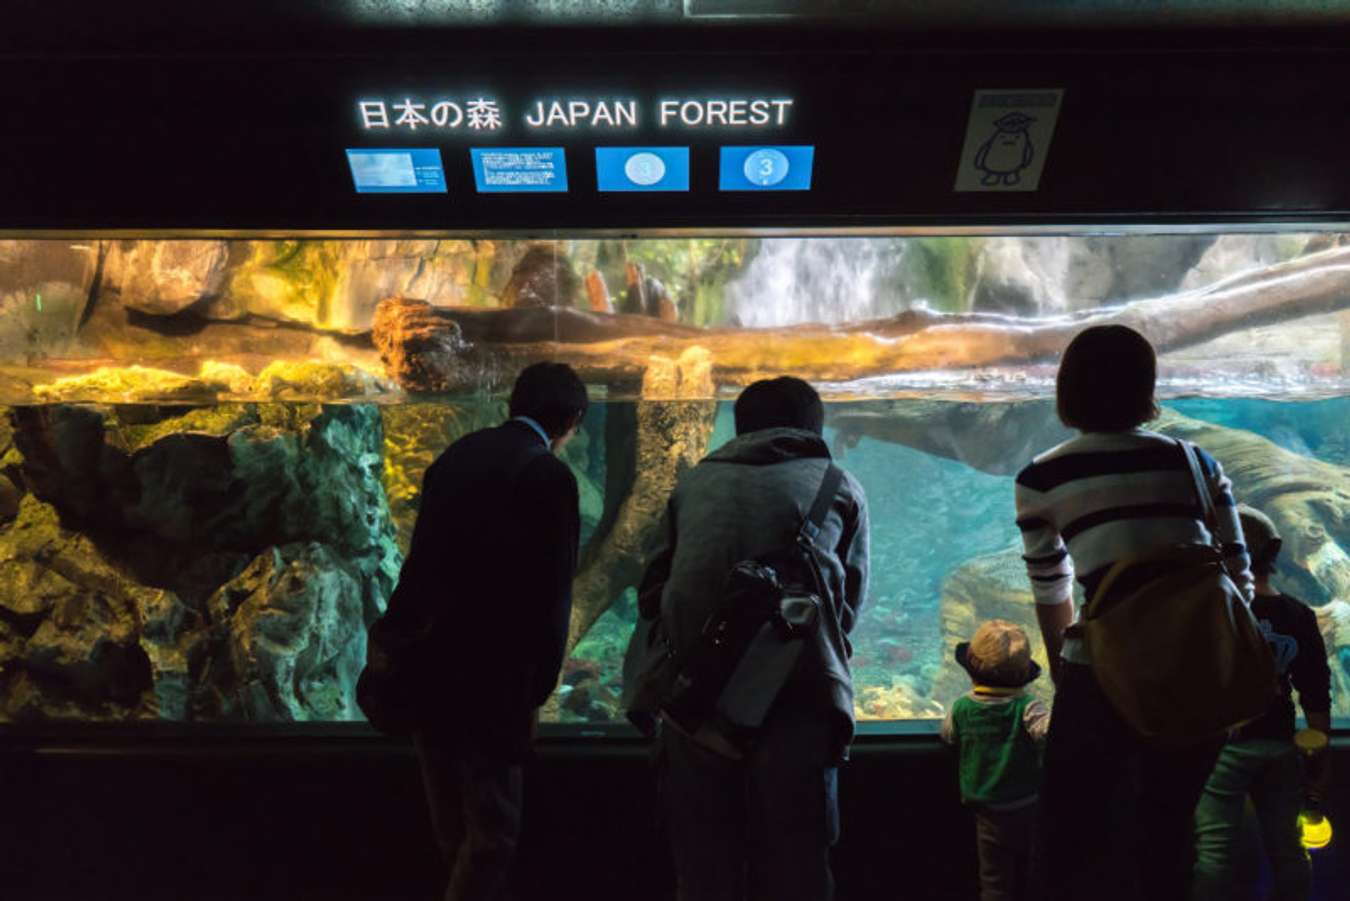 พิพิธภัณฑ์สัตว์น้ำไคยูกัง (Osaka Aquarium KAIYUKAN) - เที่ยวญี่ปุ่น